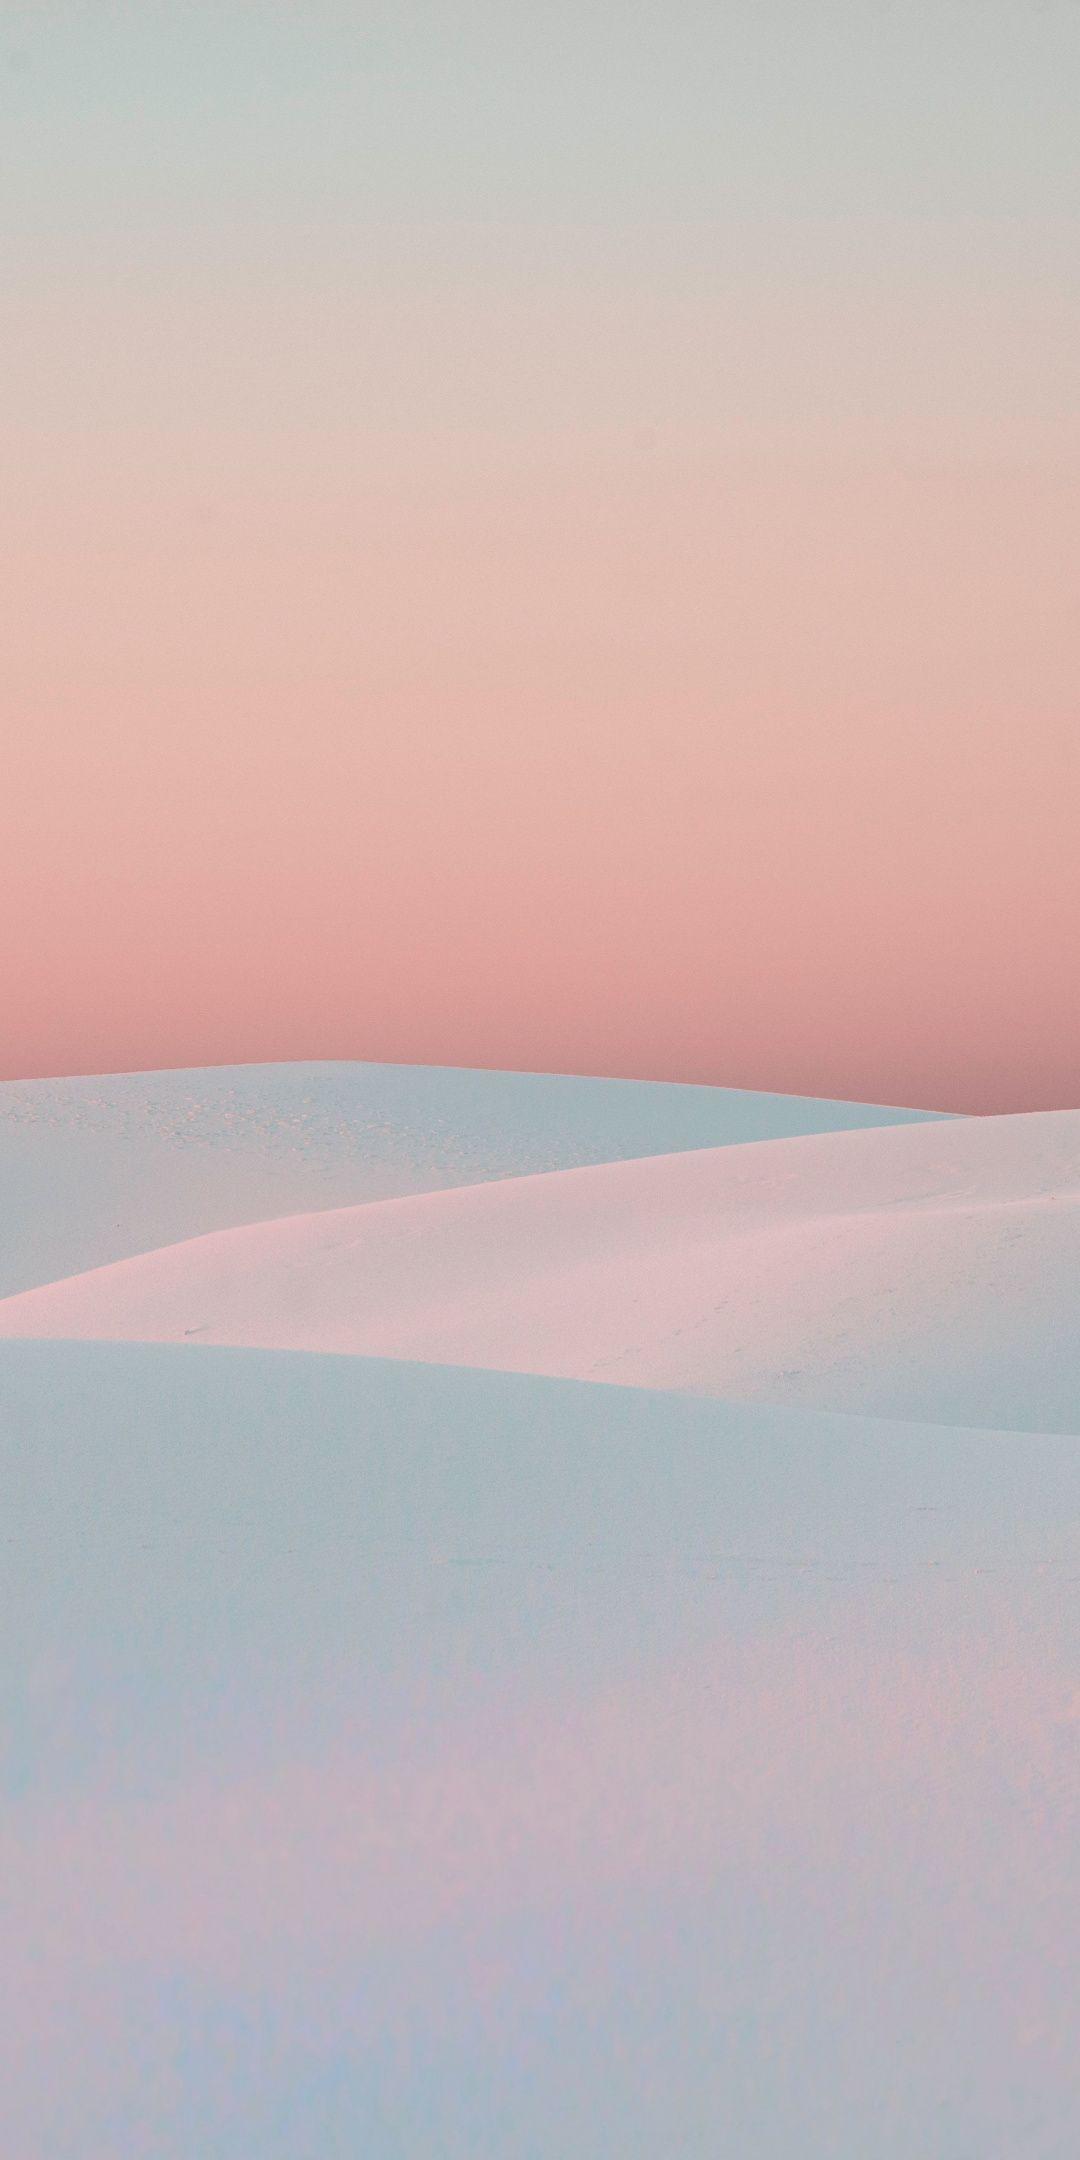 Sunset, white desert, dunes, nature Wallpapers